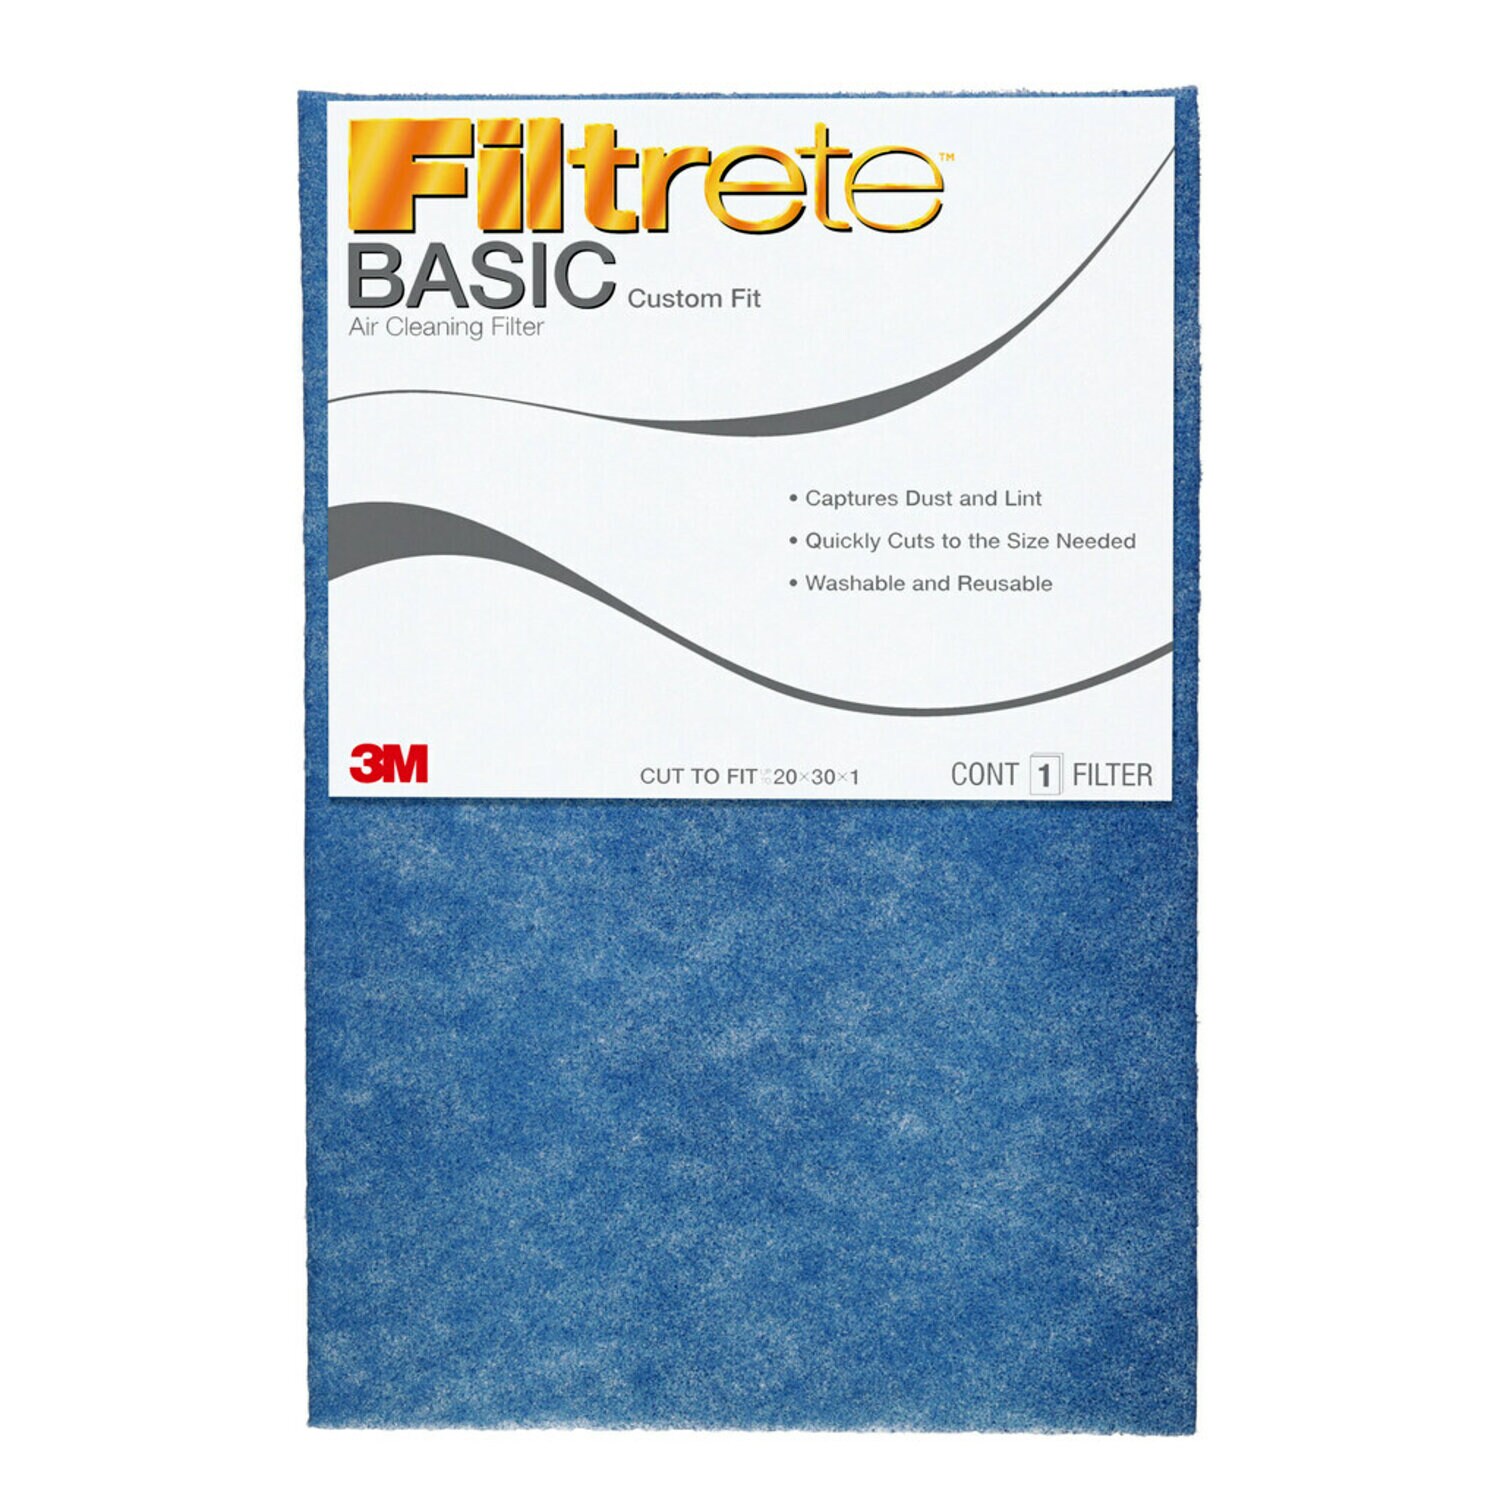 7010377614 - Filtrete Basic Air Filter HDWRCTF-12, 20 in x 30 in x 1 in (50.8 cm x
76.2 cm x 2.5 cm)